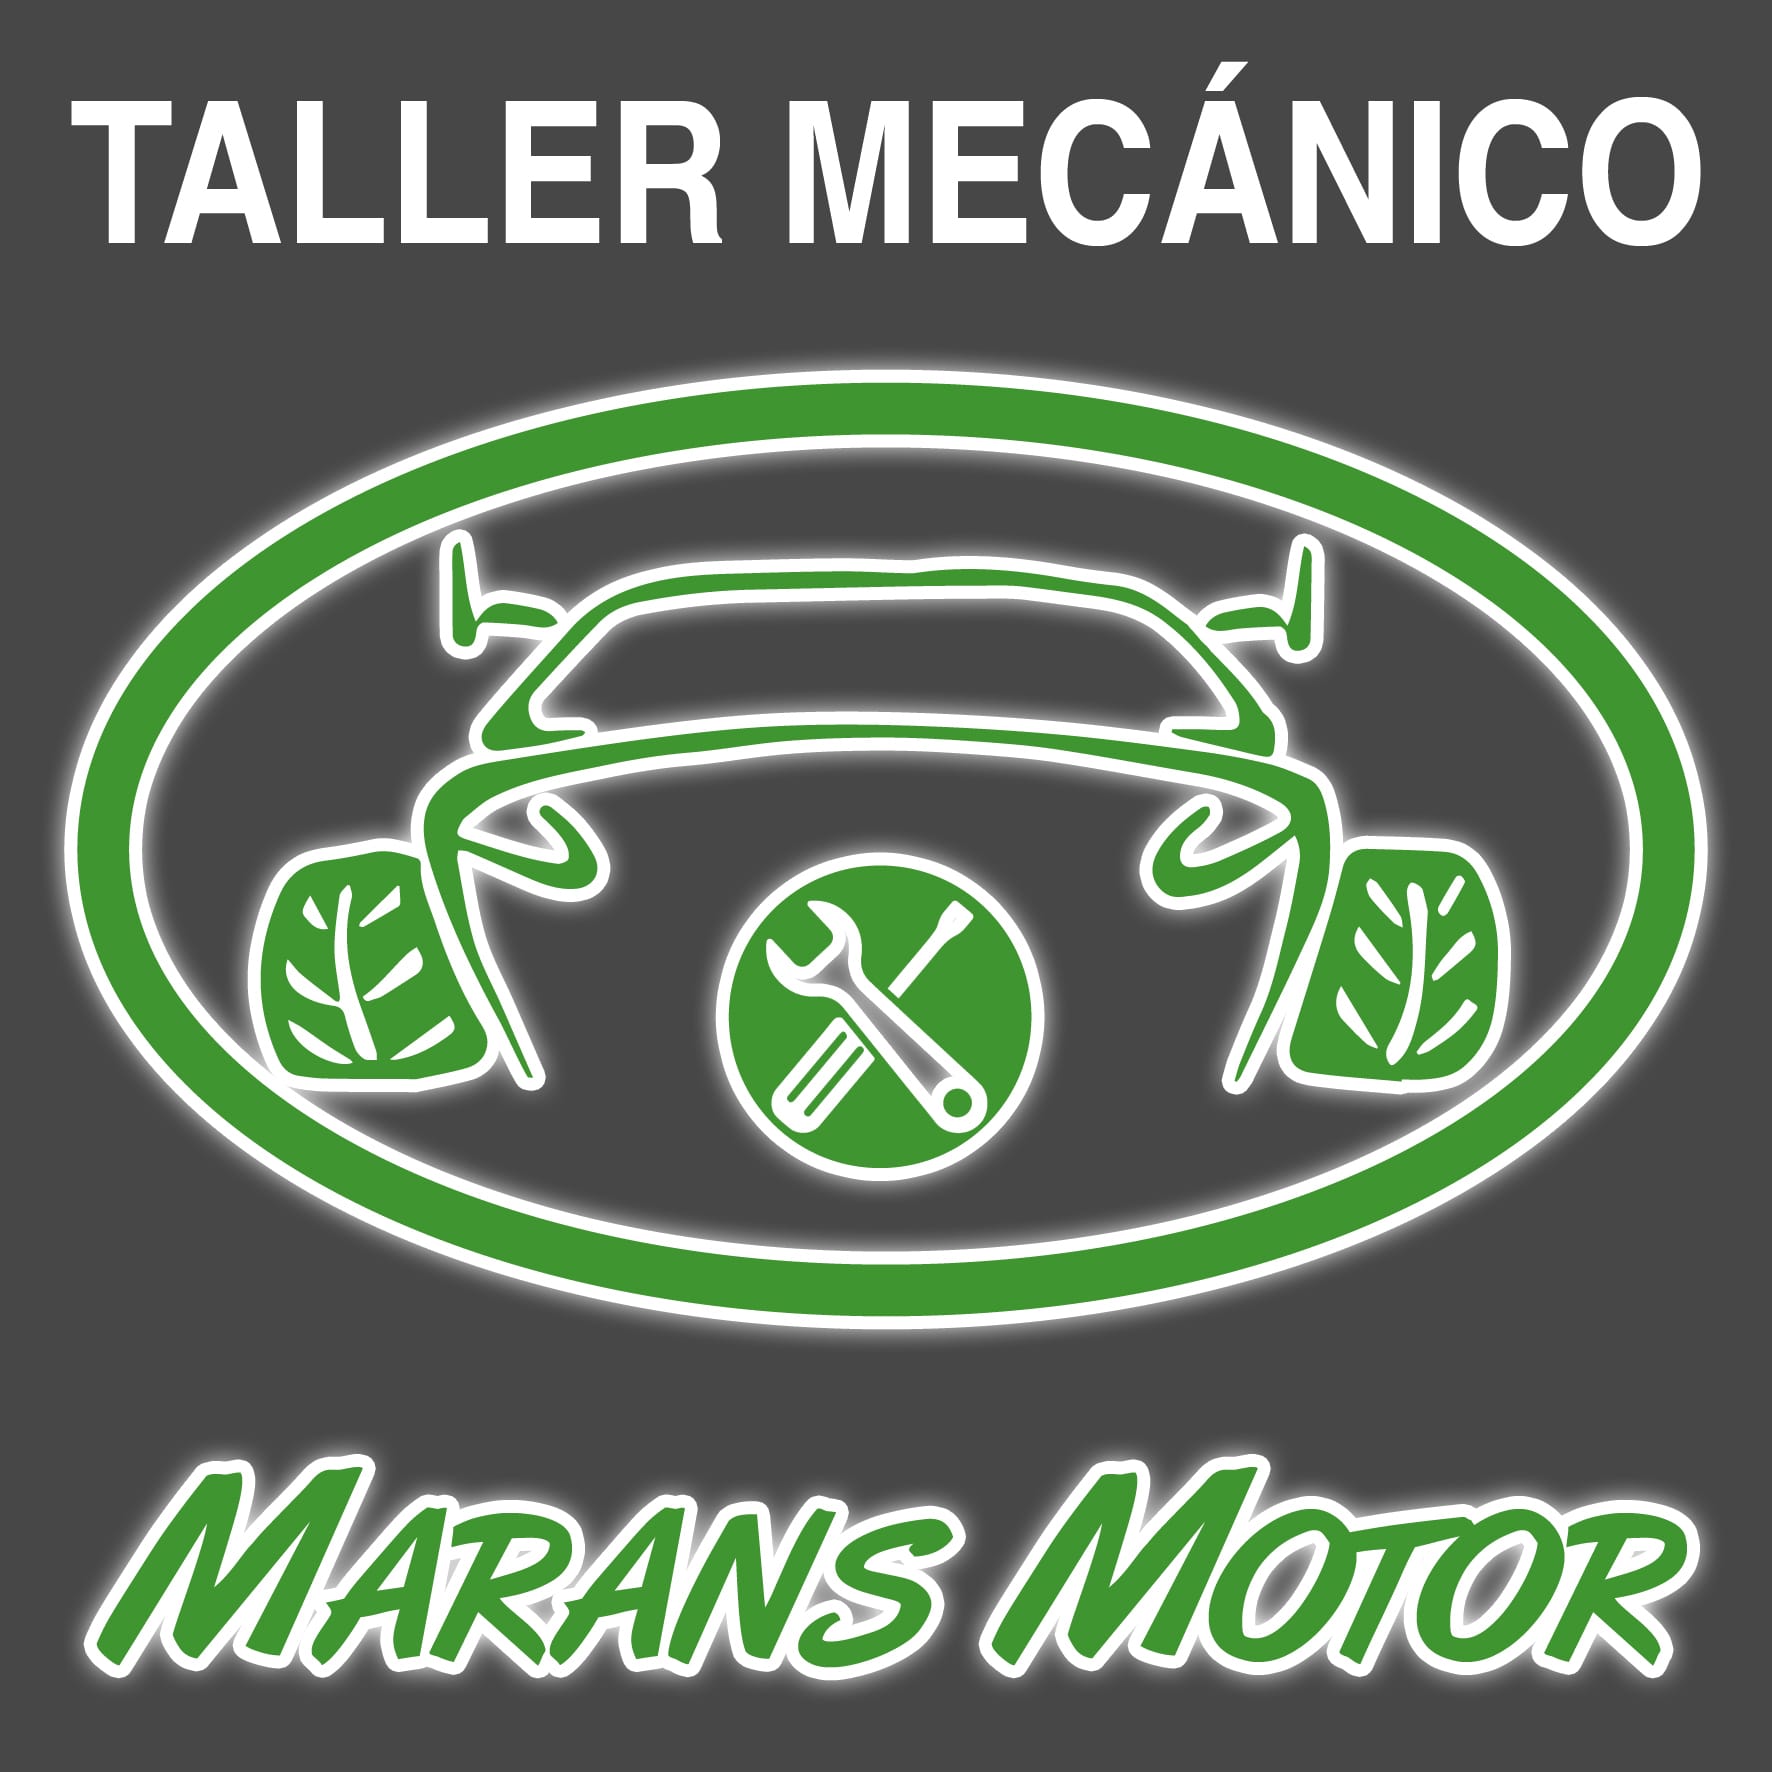 Taller Mecánico Marans Motor Linares